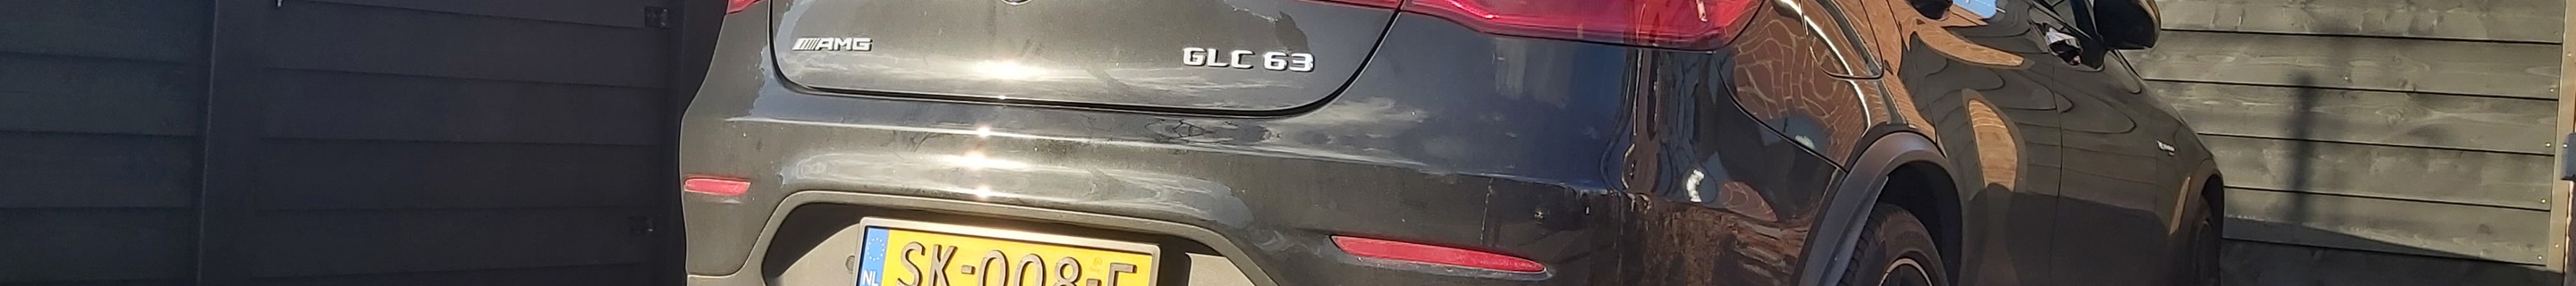 Mercedes-AMG GLC 63 Coupé C253 2018 Edition 1